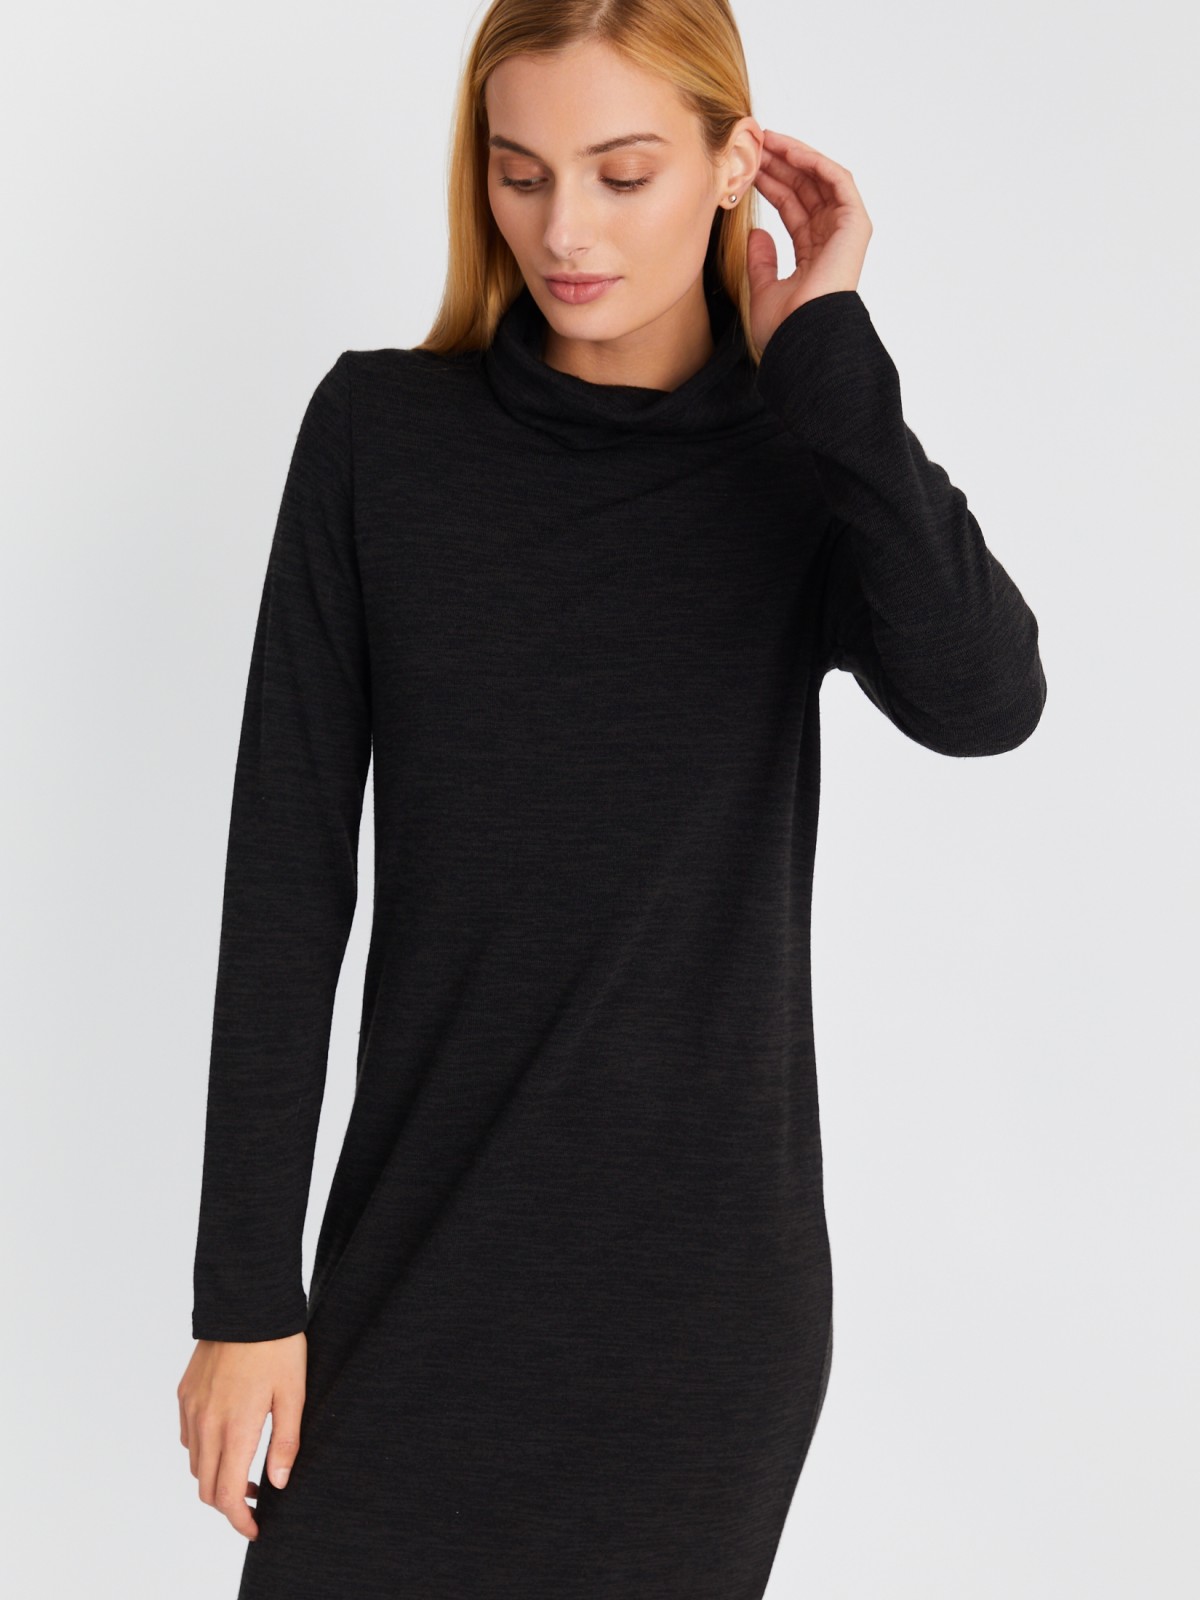 Трикотажное платье-свитер длины миди с высоким горлом zolla 02334819F062, цвет темно-серый, размер XS - фото 5